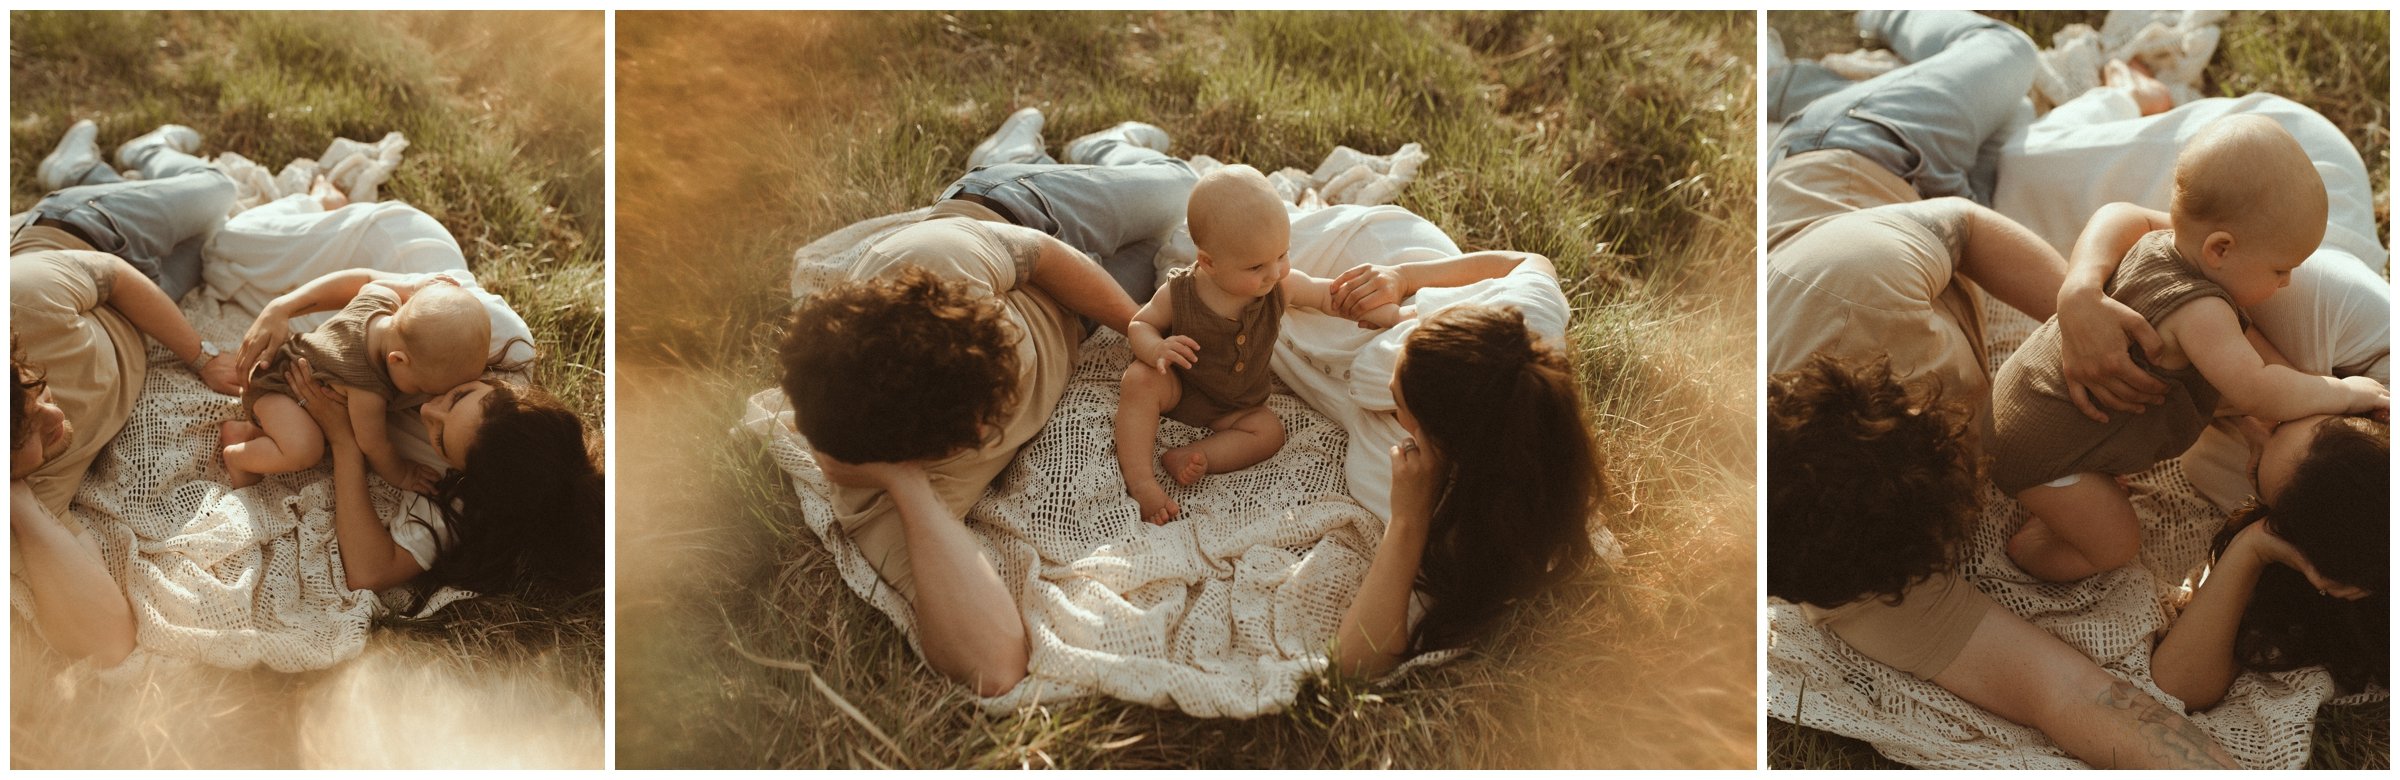 Madden Family Session - Kamra Fuller Photography - Boise Family Photographer